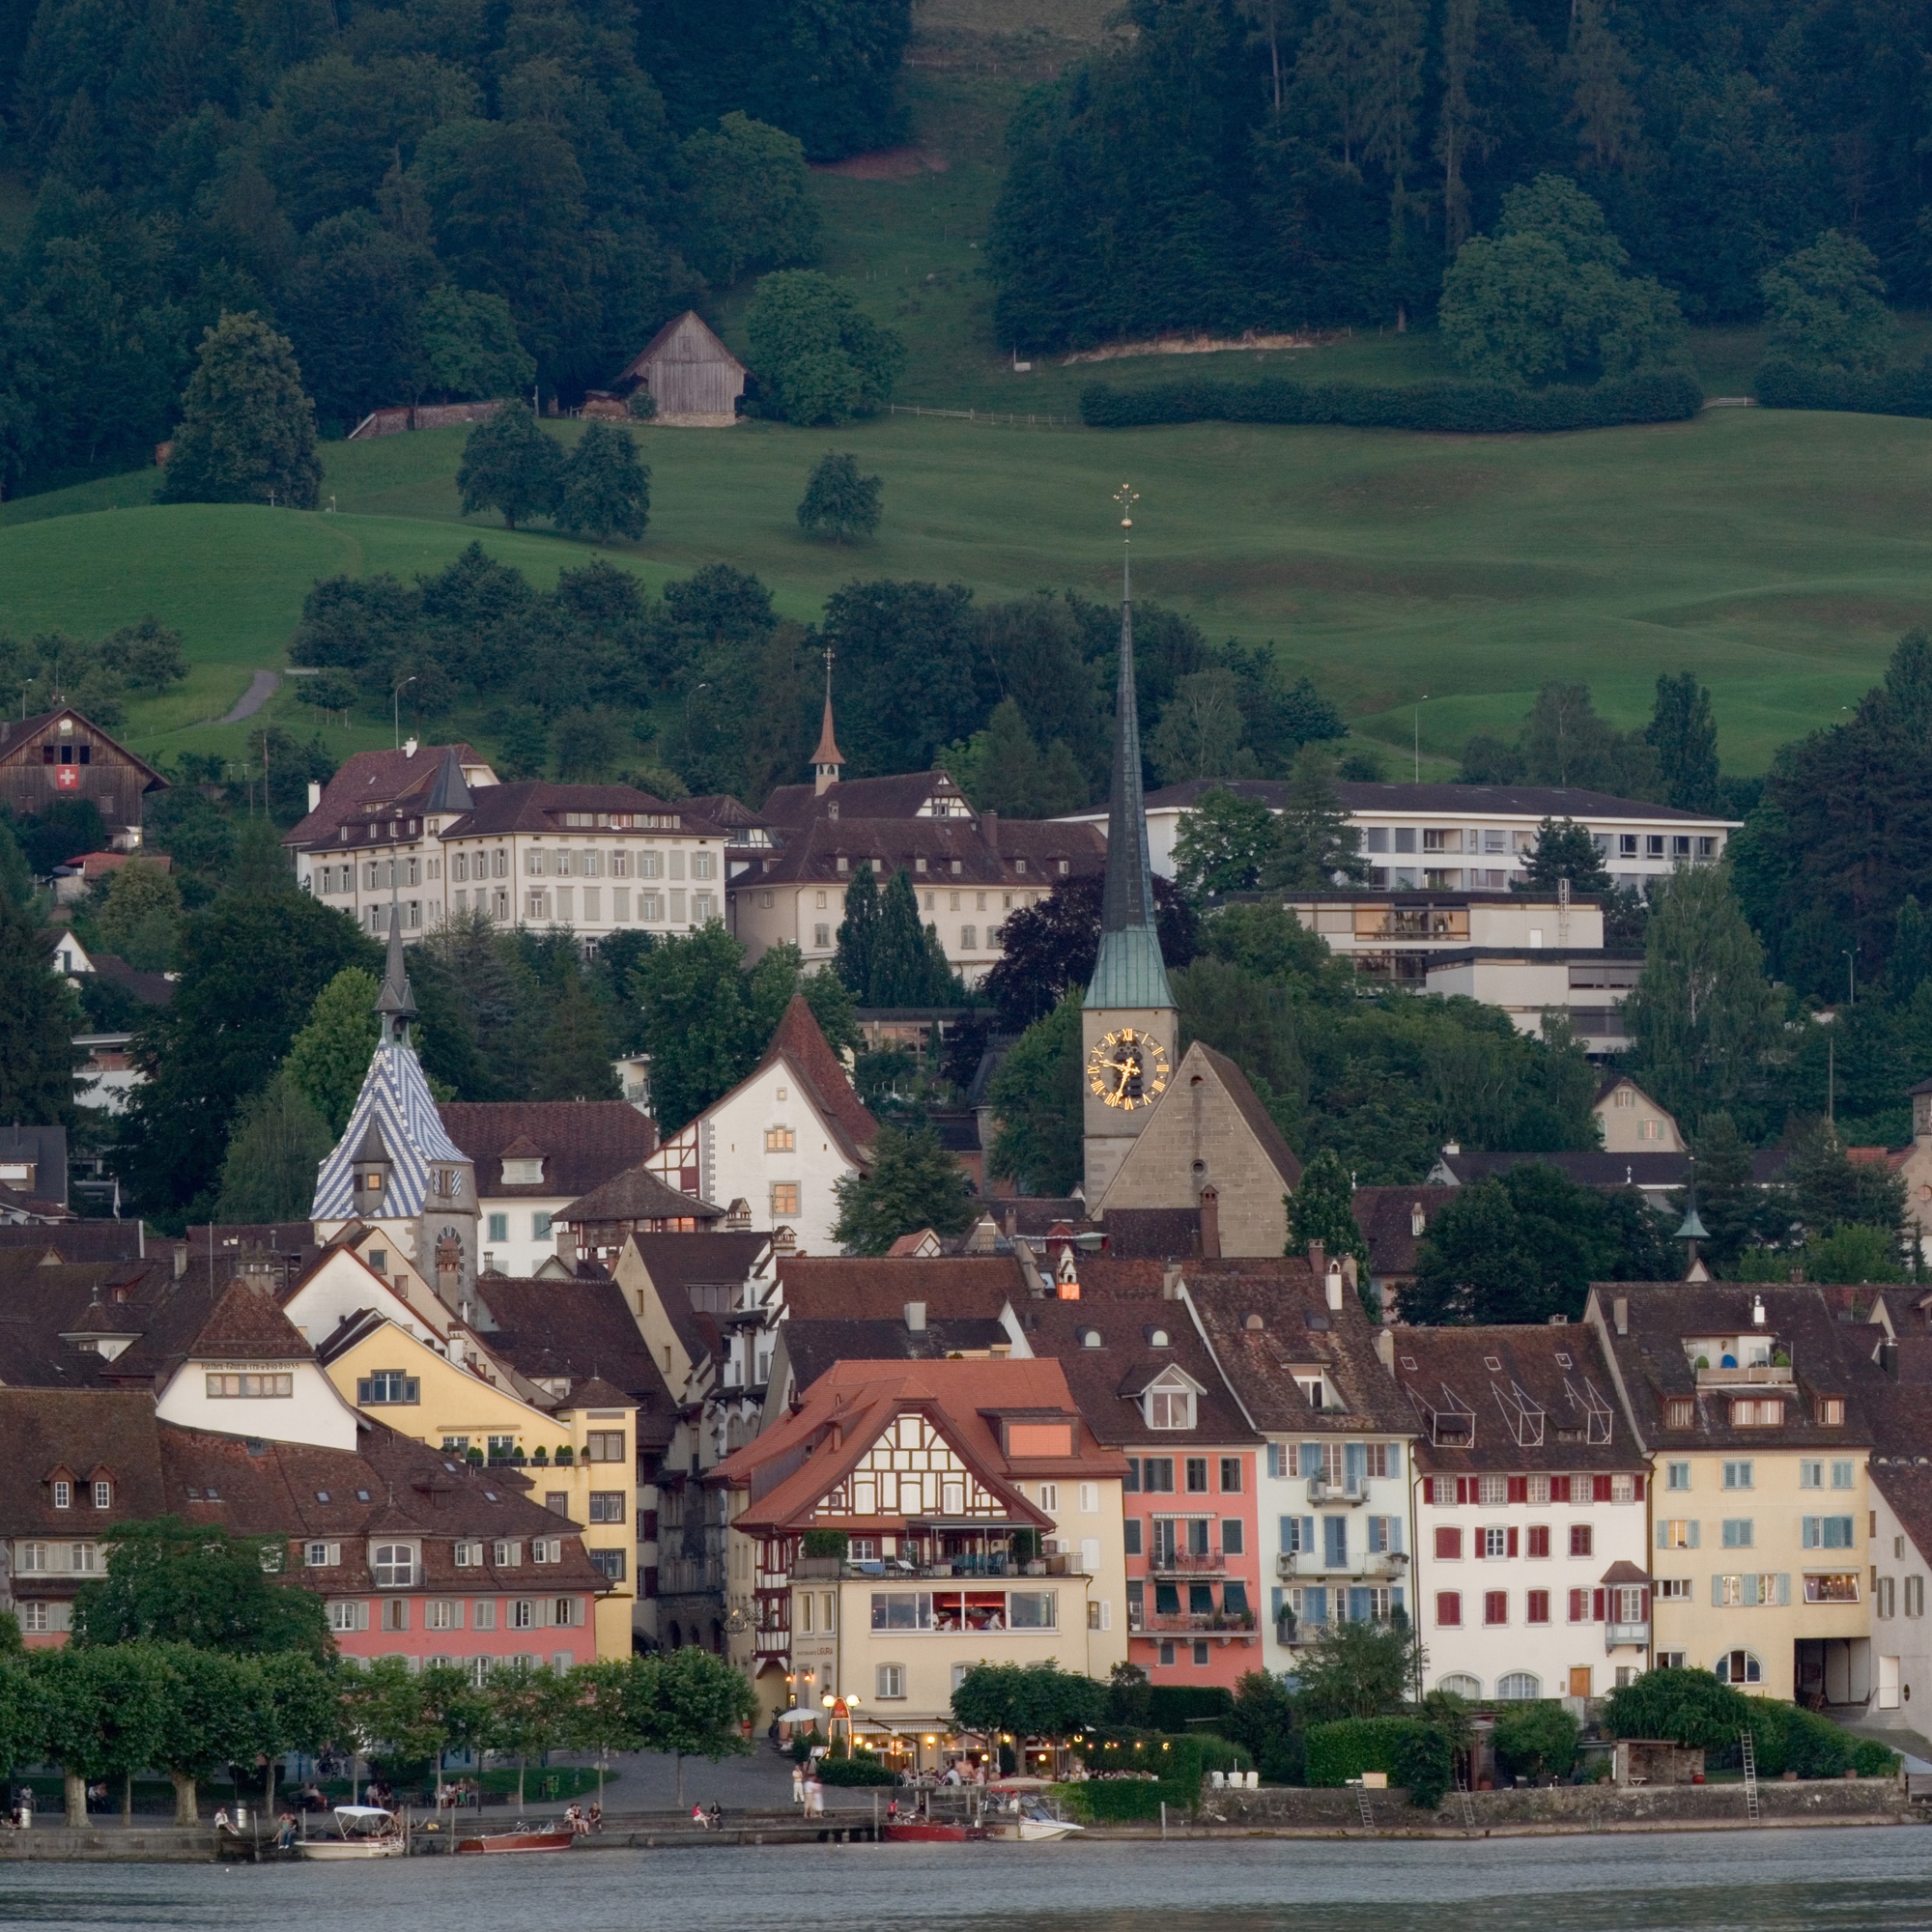 Foto: Panorama der Altstadt von Zug (Ausschnitt)